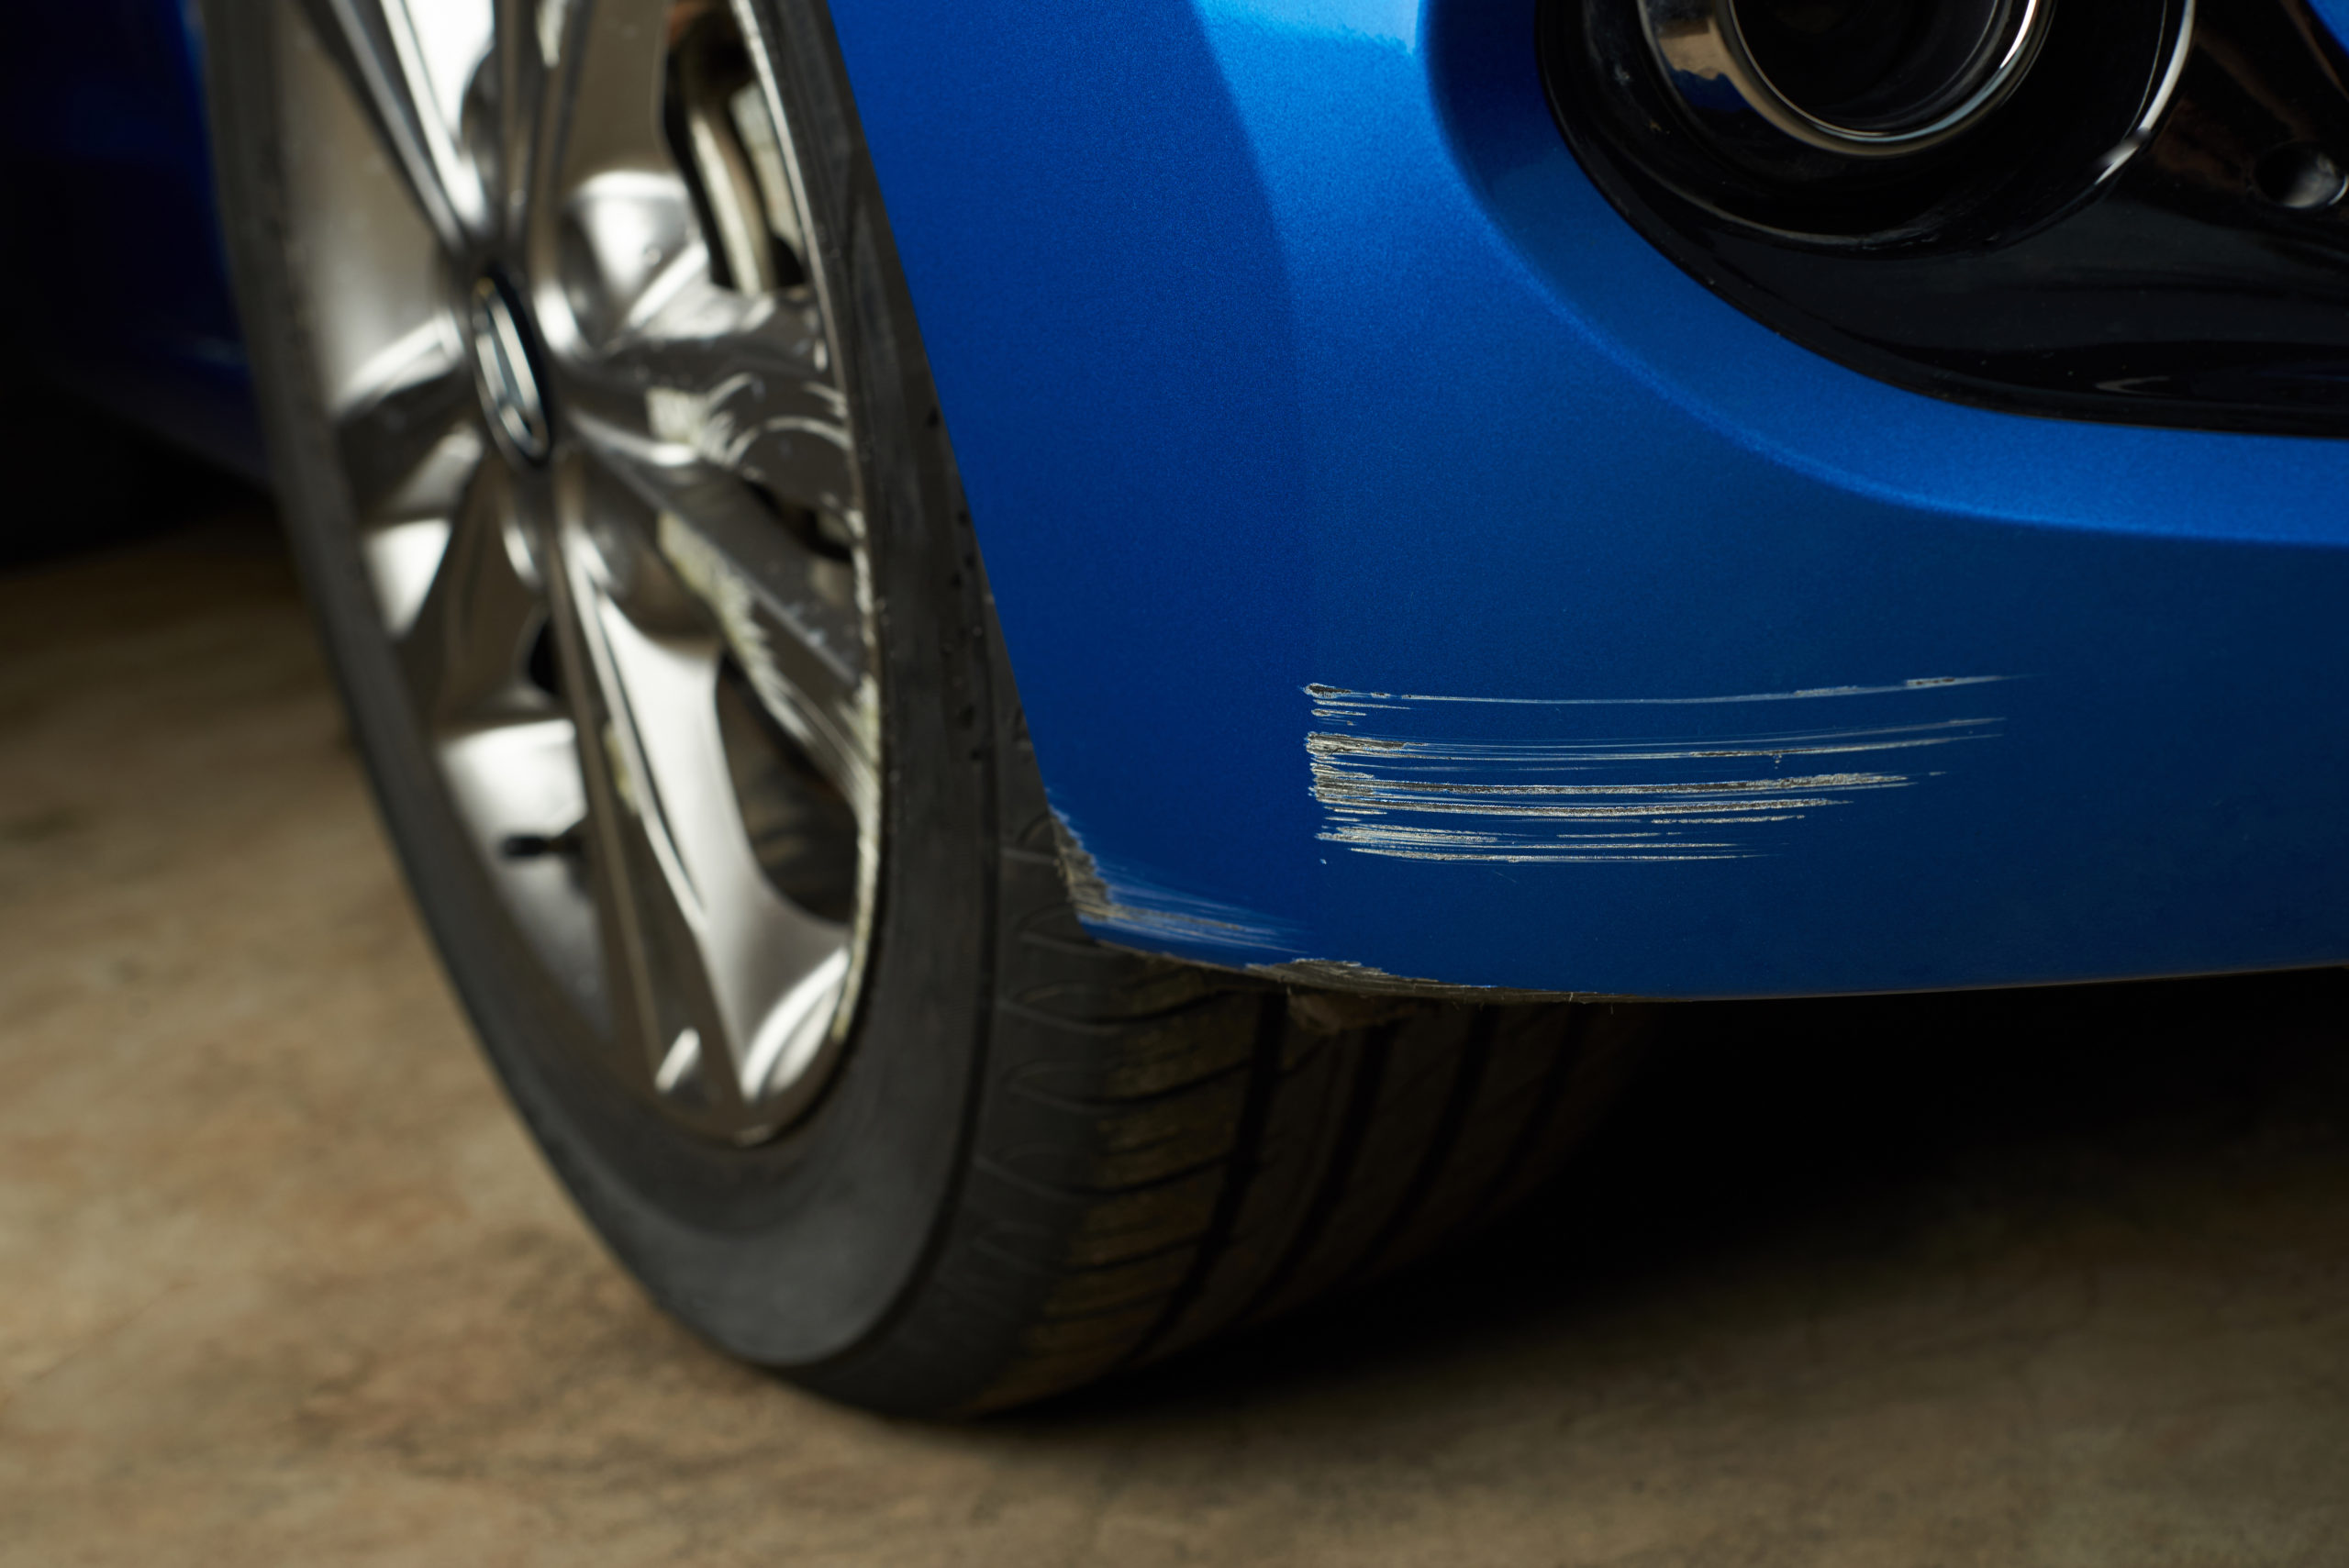 車の線傷を3 300円で修理する方法とは 相場料金も解説 格安板金塗装 池内自動車